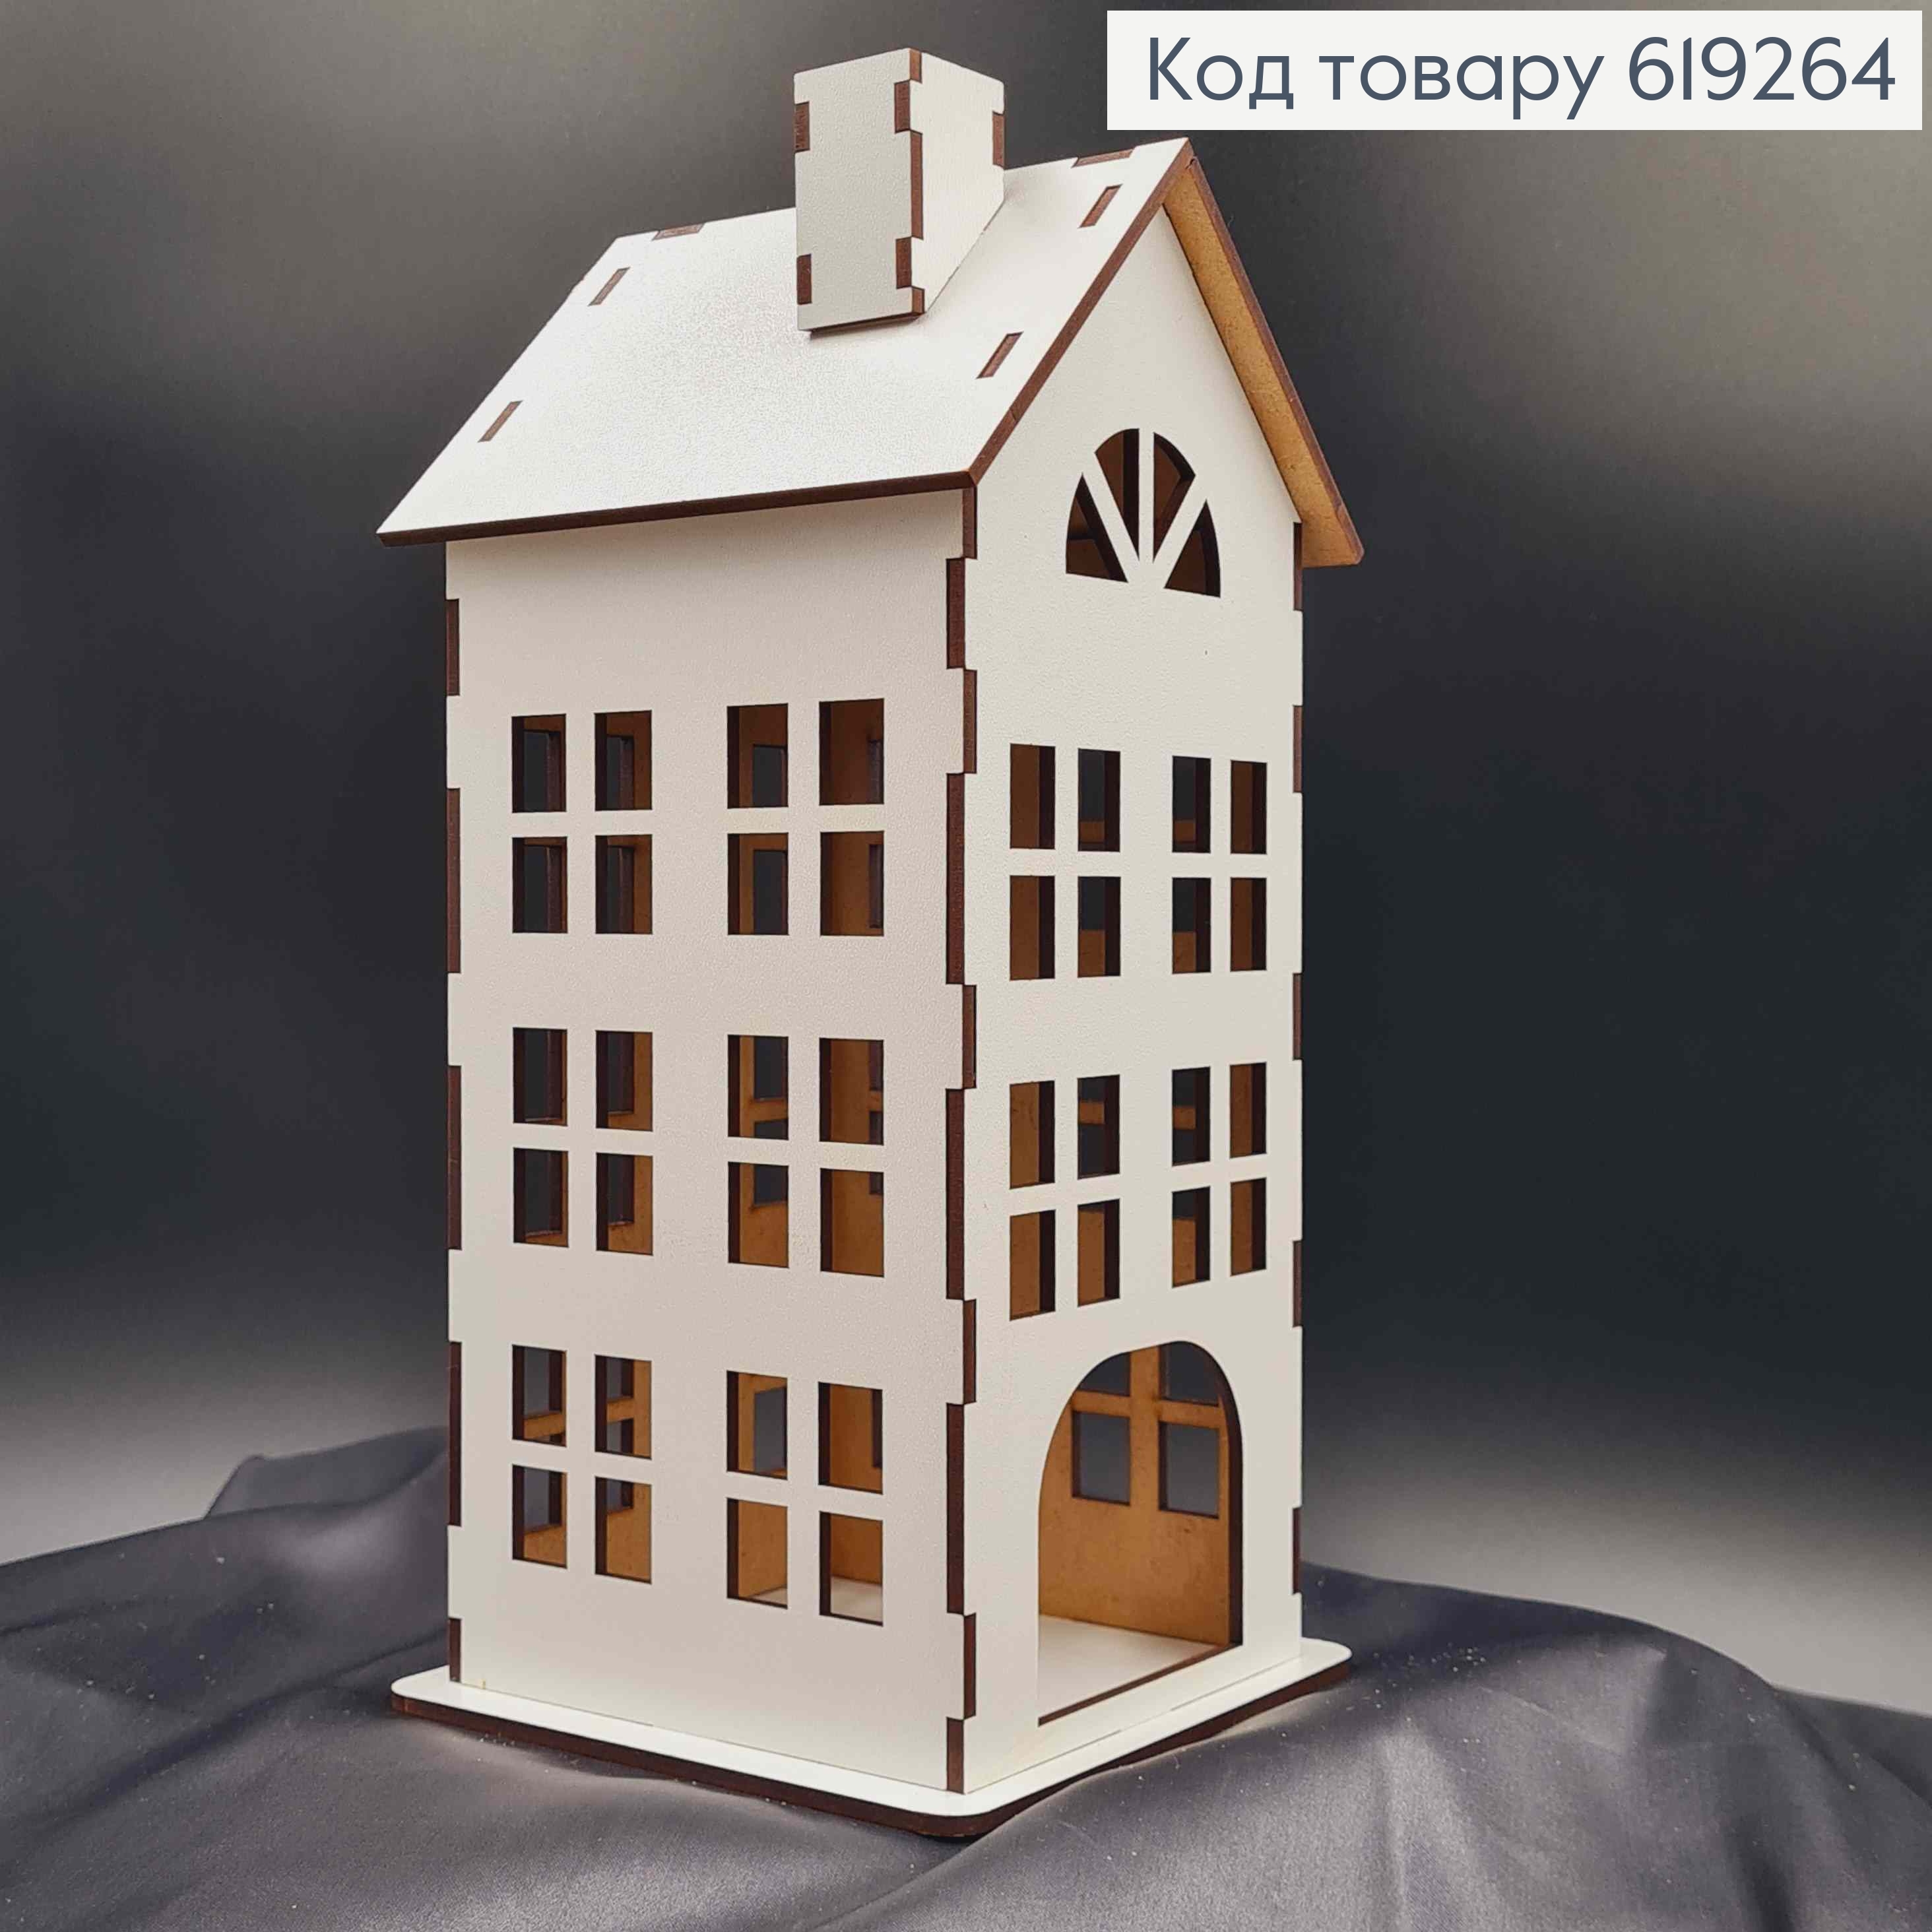 Підсвічник, дерев'яний білий будиночок, багатоповерхівка, класичний, 25*12см, Україна 619264 фото 2